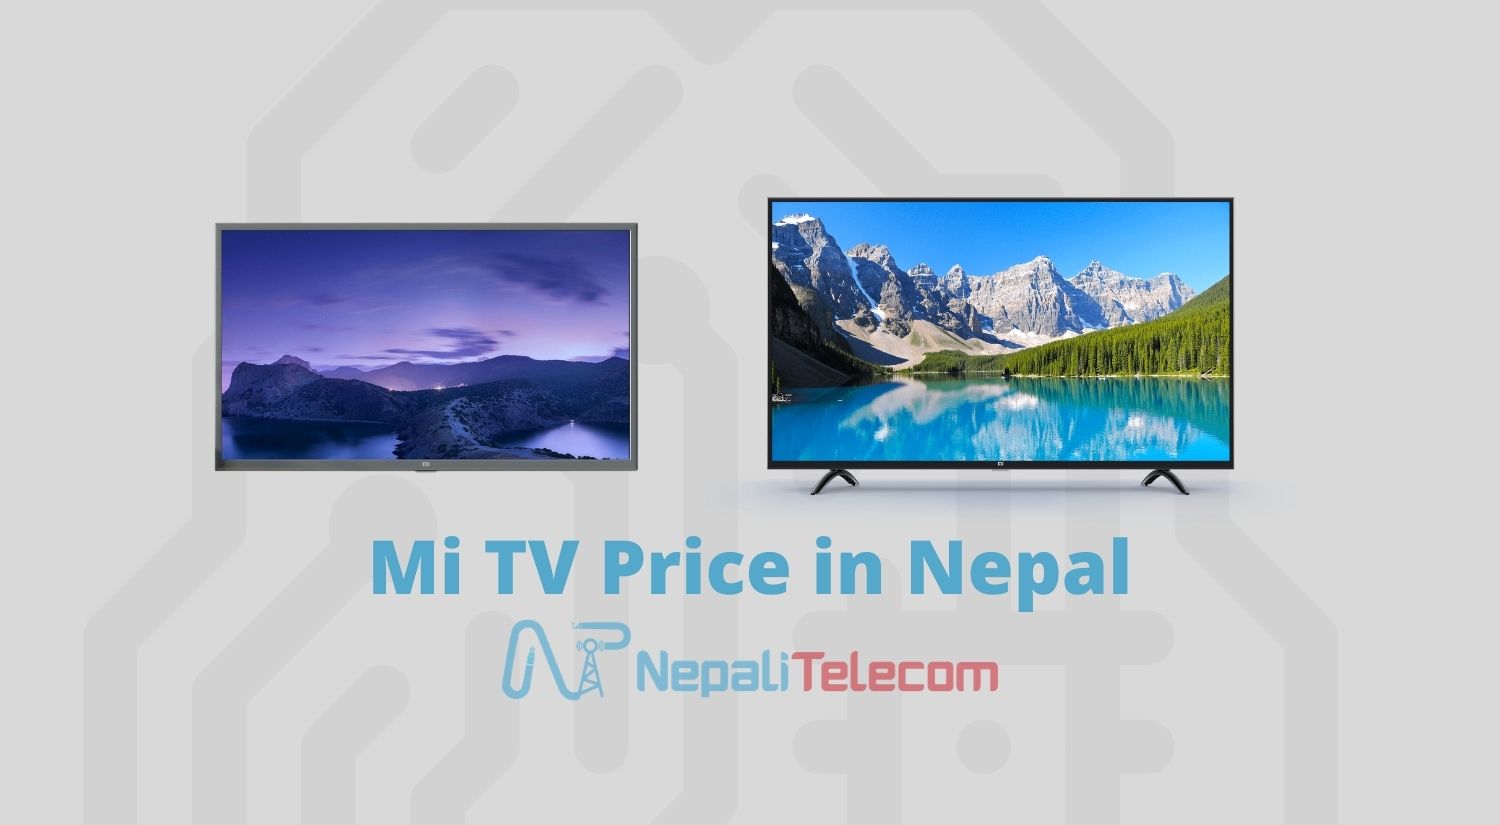 Mi TV Price in Nepal